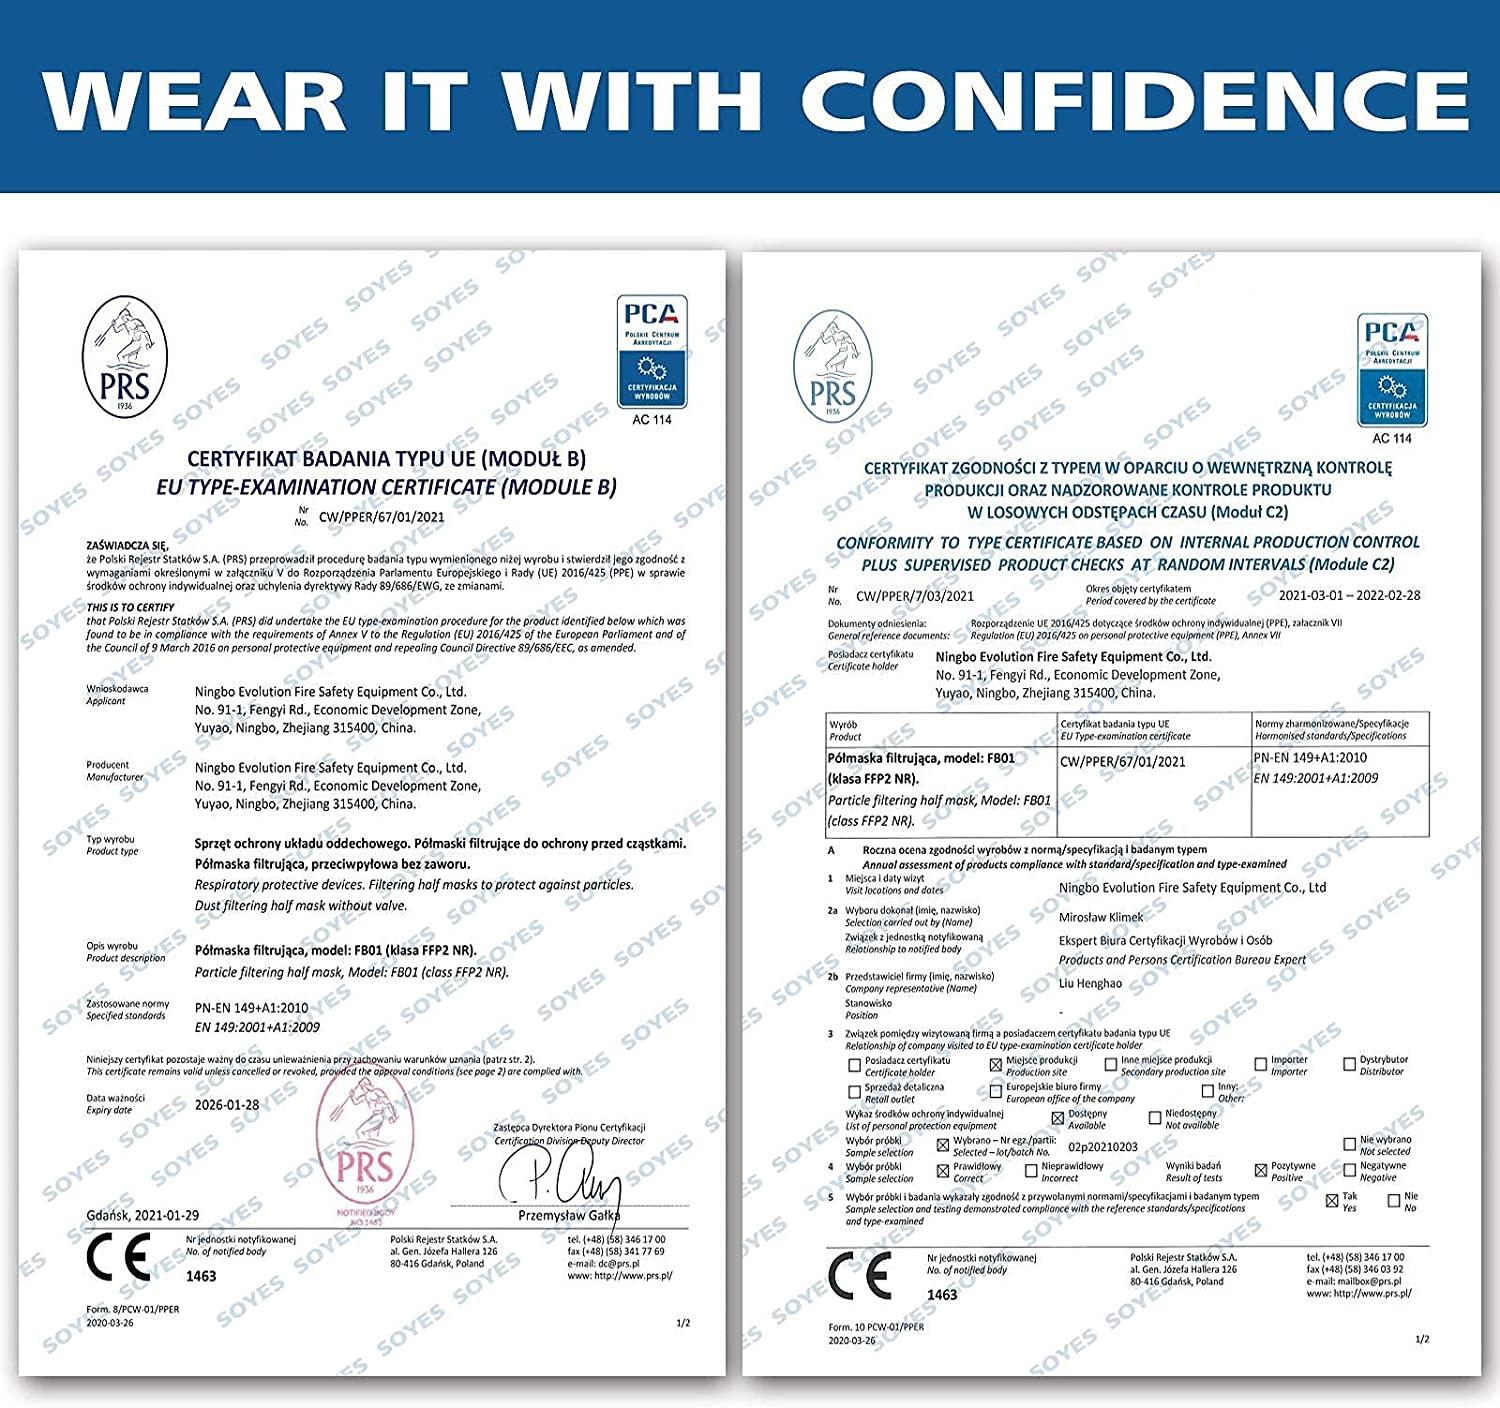 Famex Mini FFP2 Maske Schwarz CE Zertifiziert (1x20)